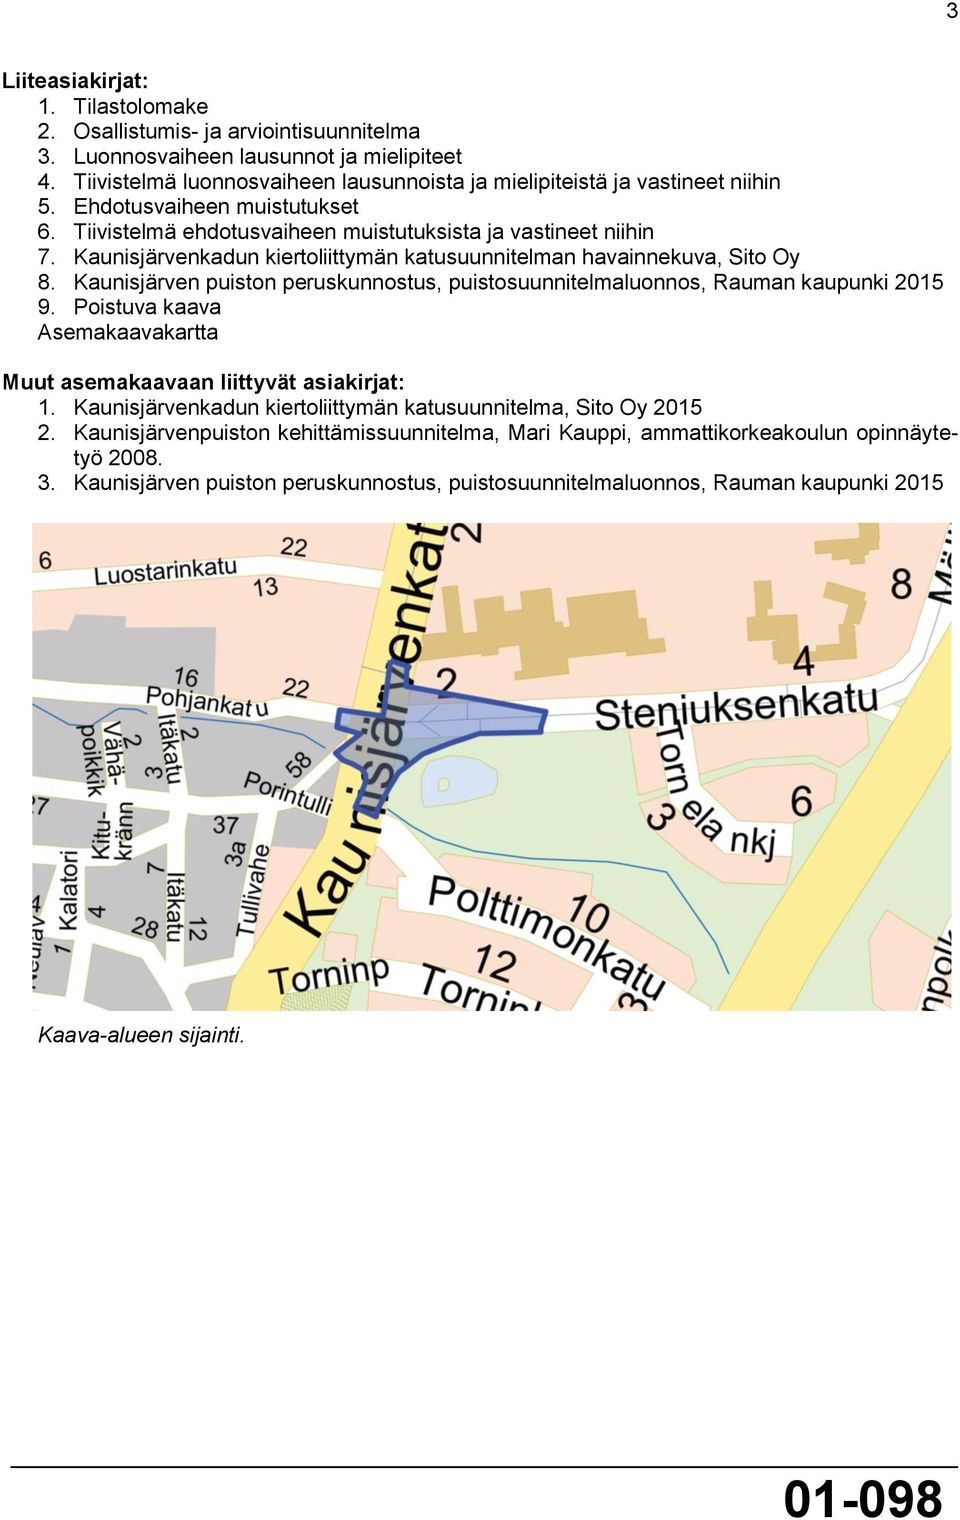 Kaunisjärvenkadun kiertoliittymän katusuunnitelman havainnekuva, Sito Oy 8. Kaunisjärven puiston peruskunnostus, puistosuunnitelmaluonnos, Rauman kaupunki 2015 9.